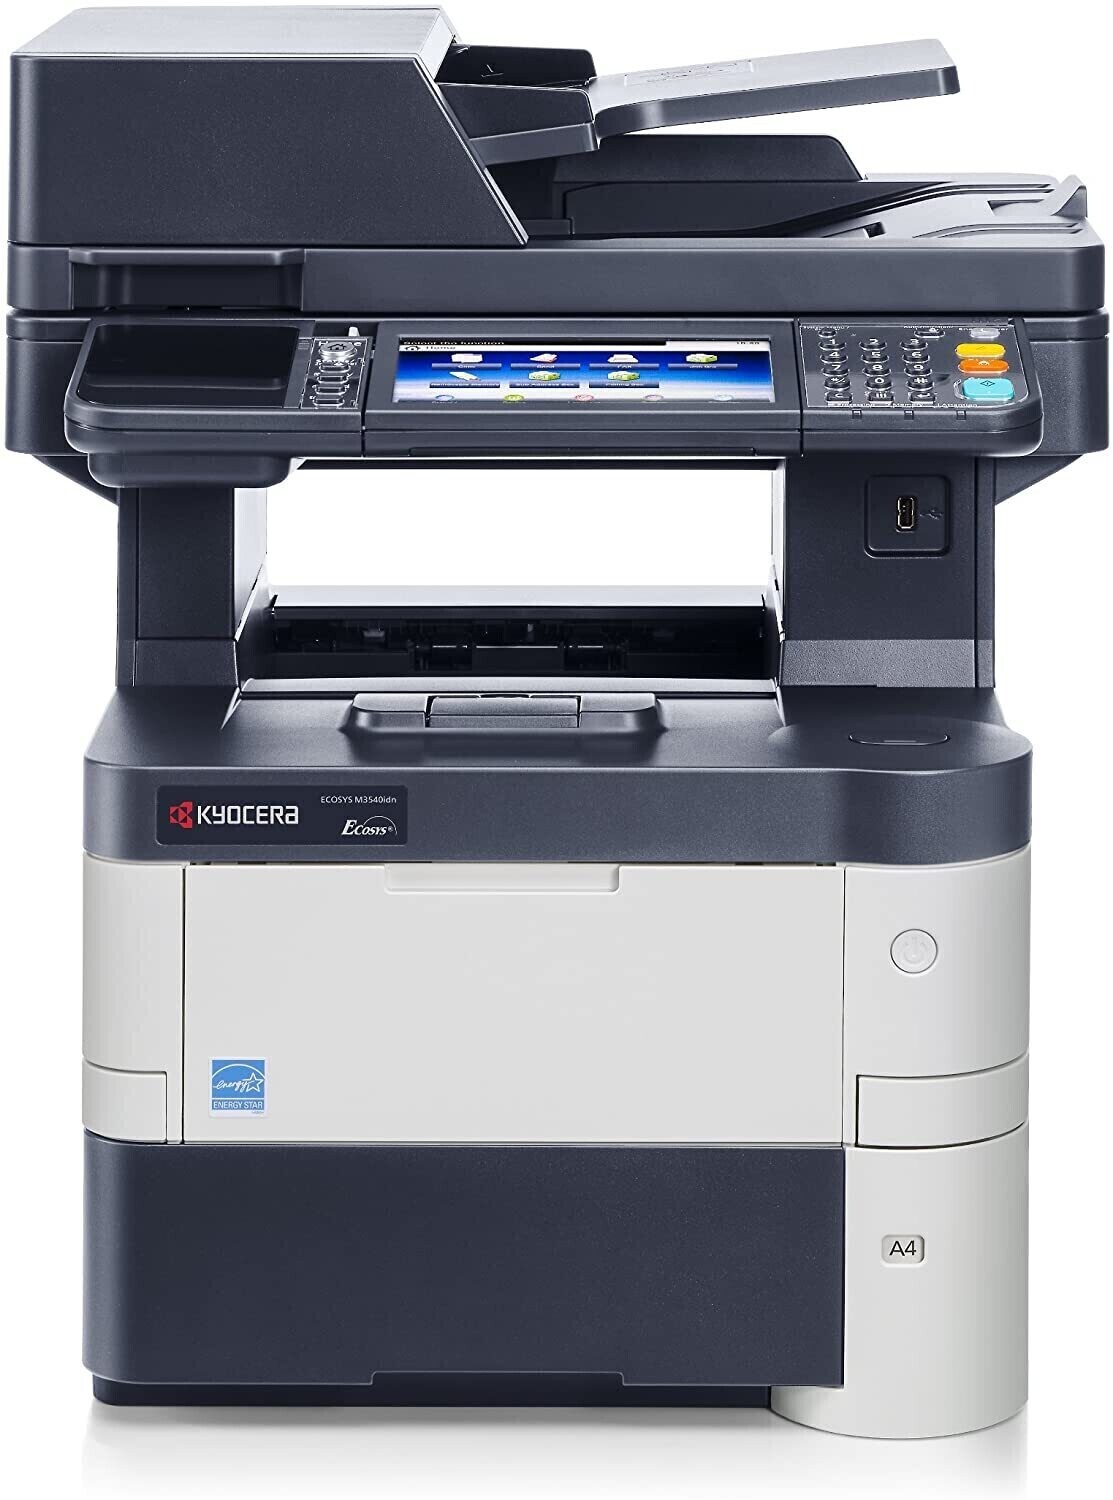 Alquiler fotocopiadora multifunción KYOCERA ECOSYS M35540idn